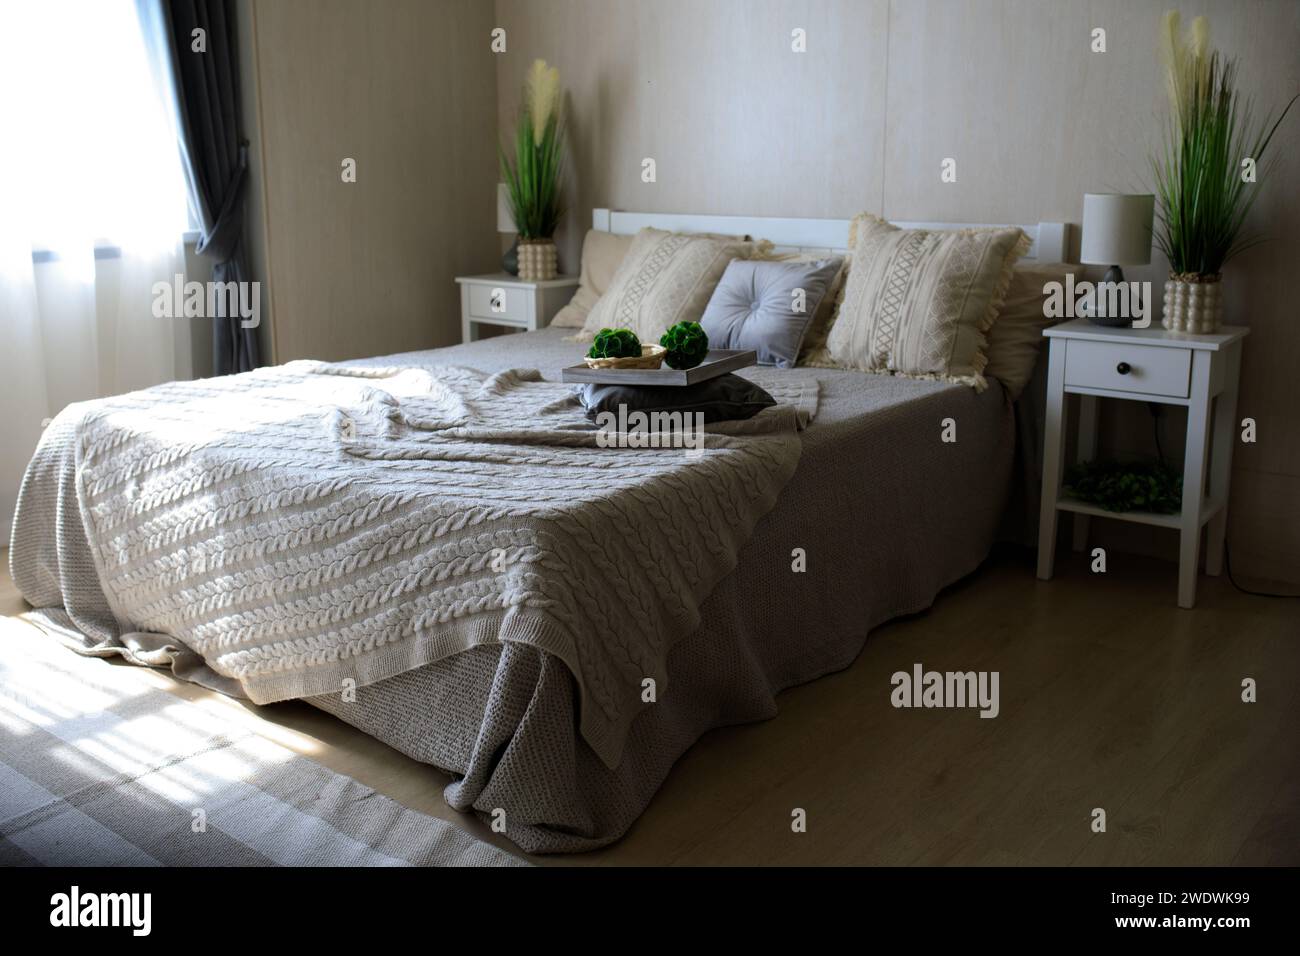 il letto è realizzato in modo splendido, la camera da letto è in colori delicati. Foto di alta qualità Foto Stock